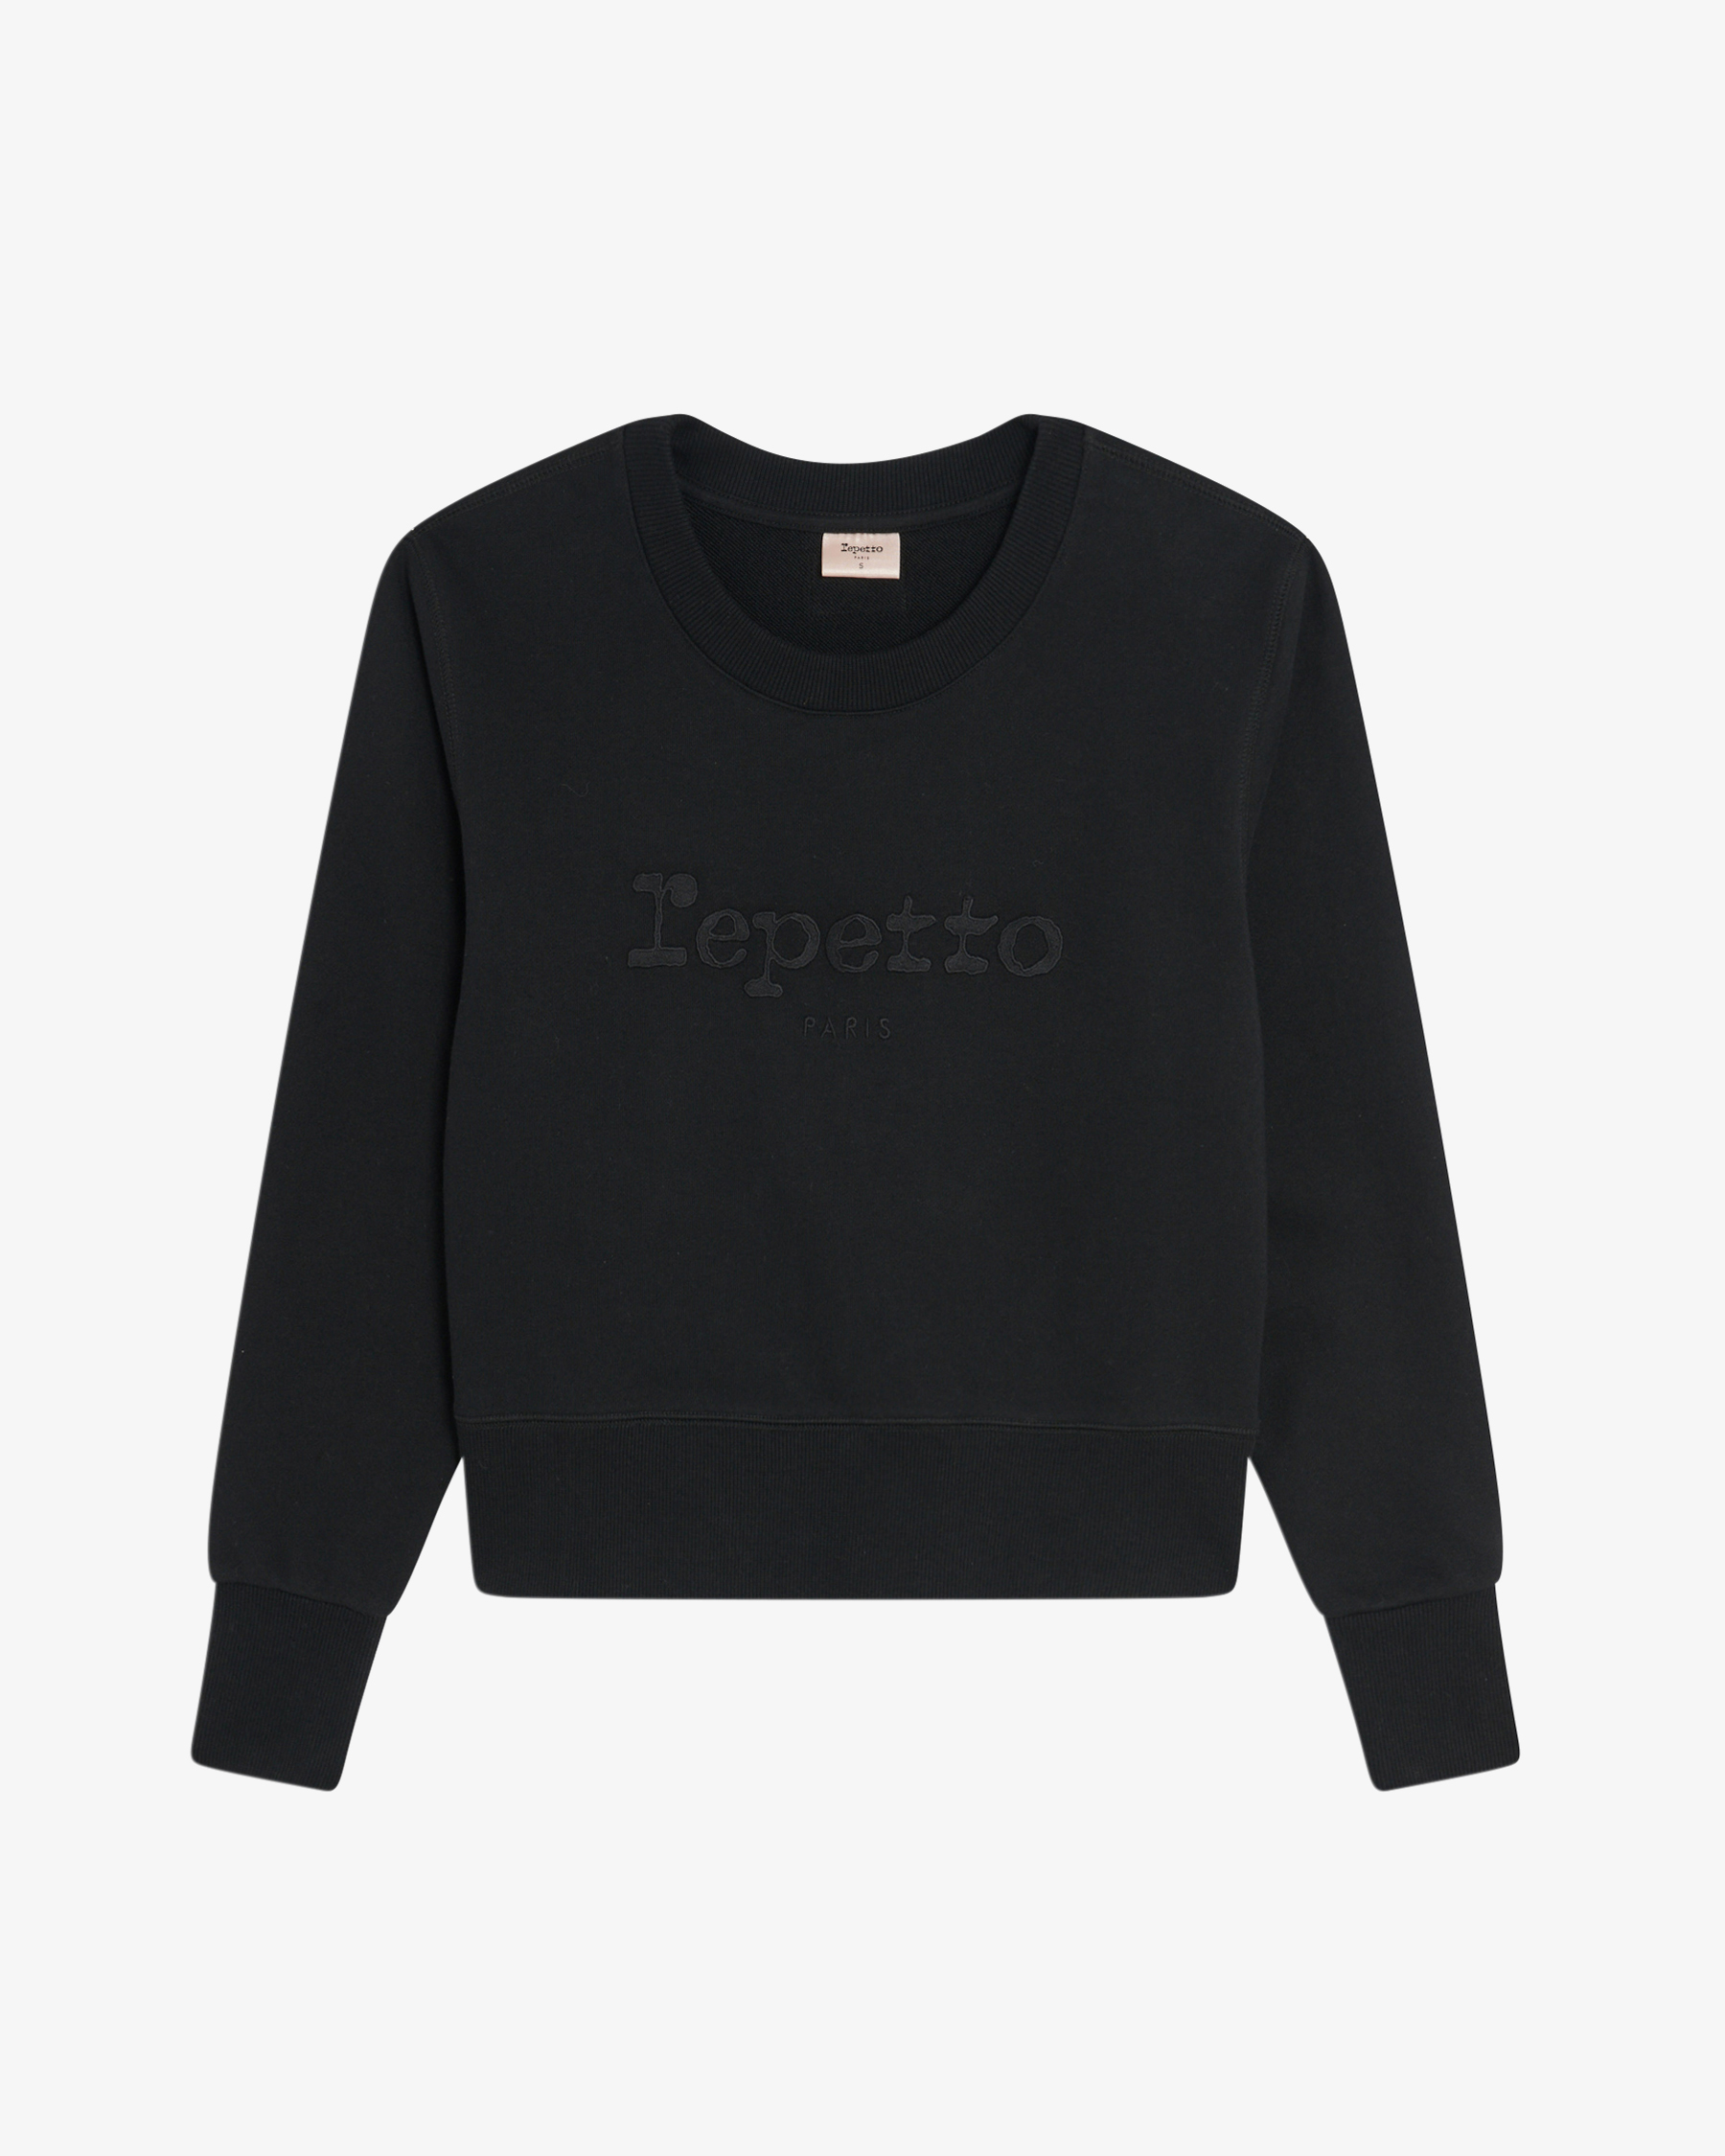 Repetto Sweatshirt für Damen - Baumwolle - Repetto von Repetto